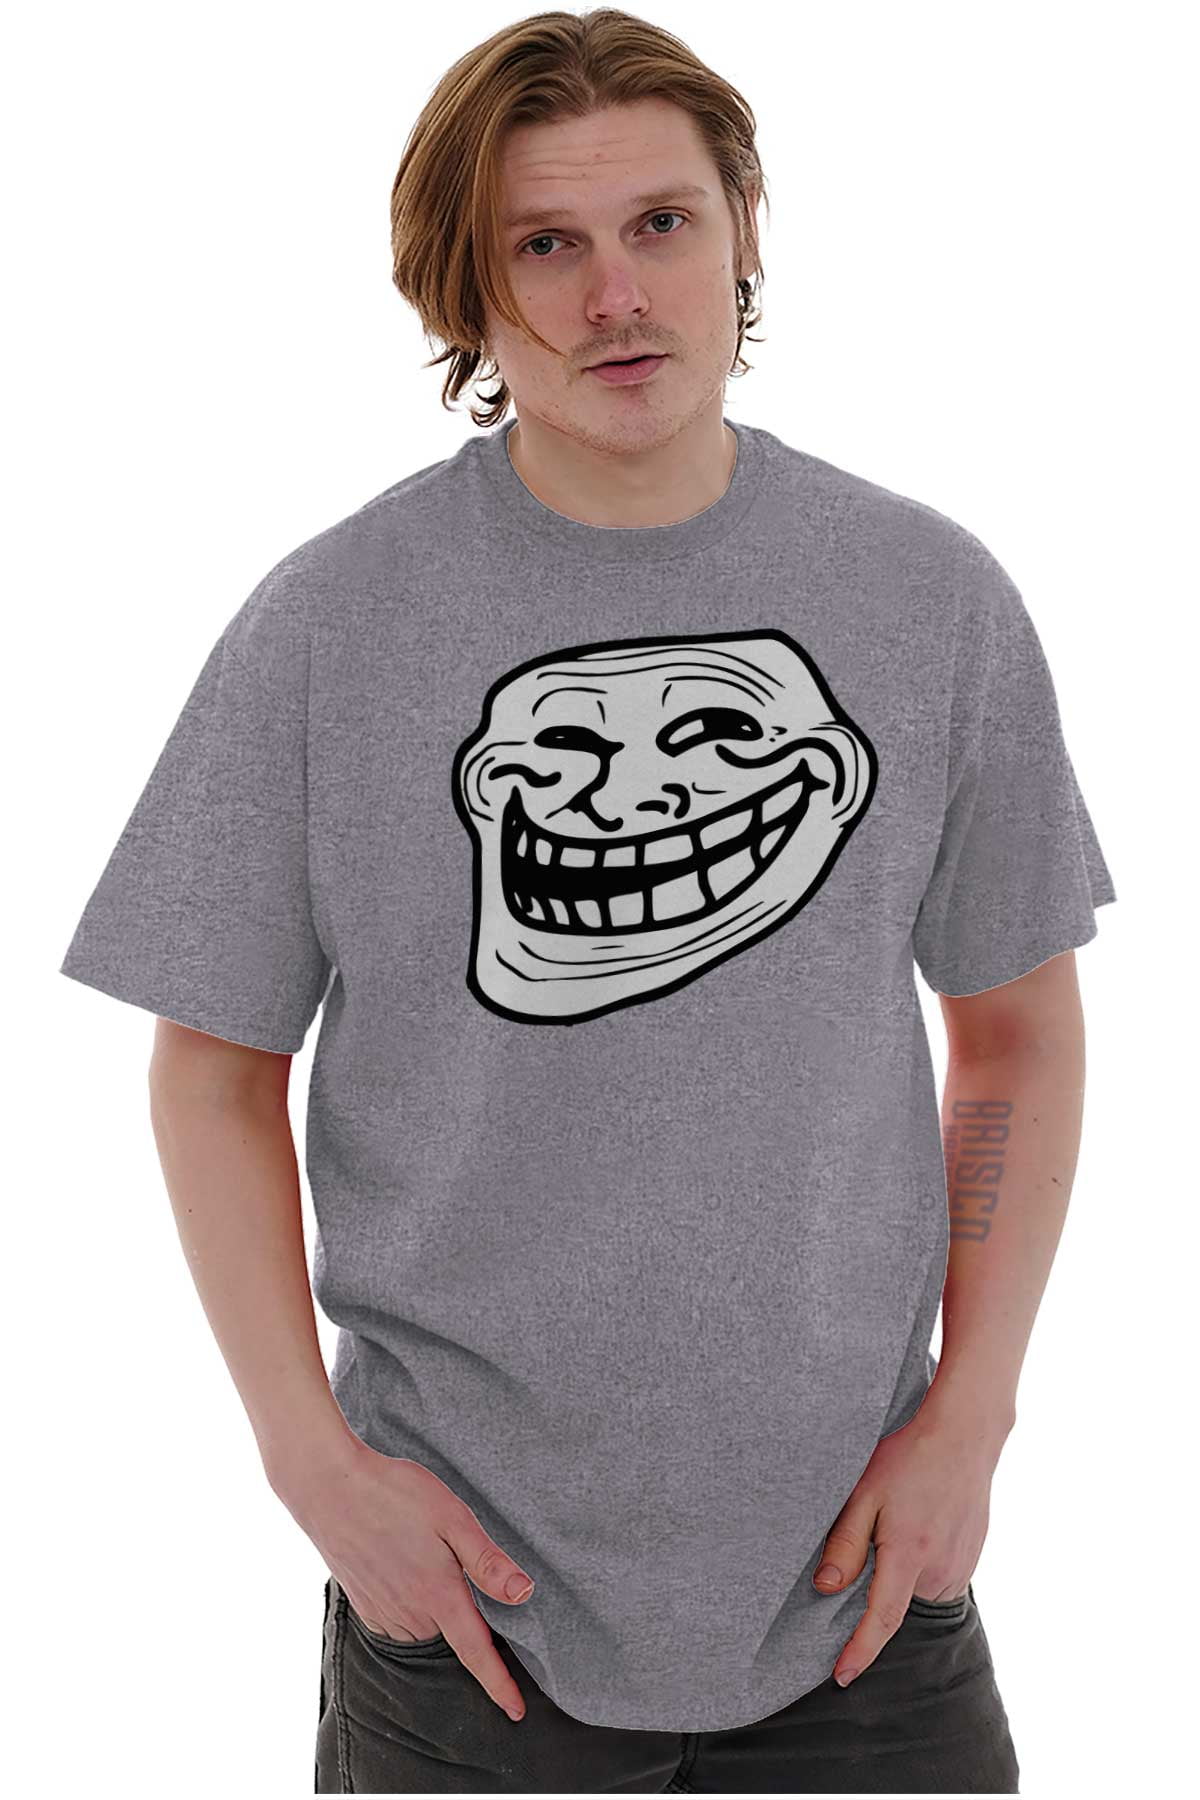 Troll Face Shirt -  Finland